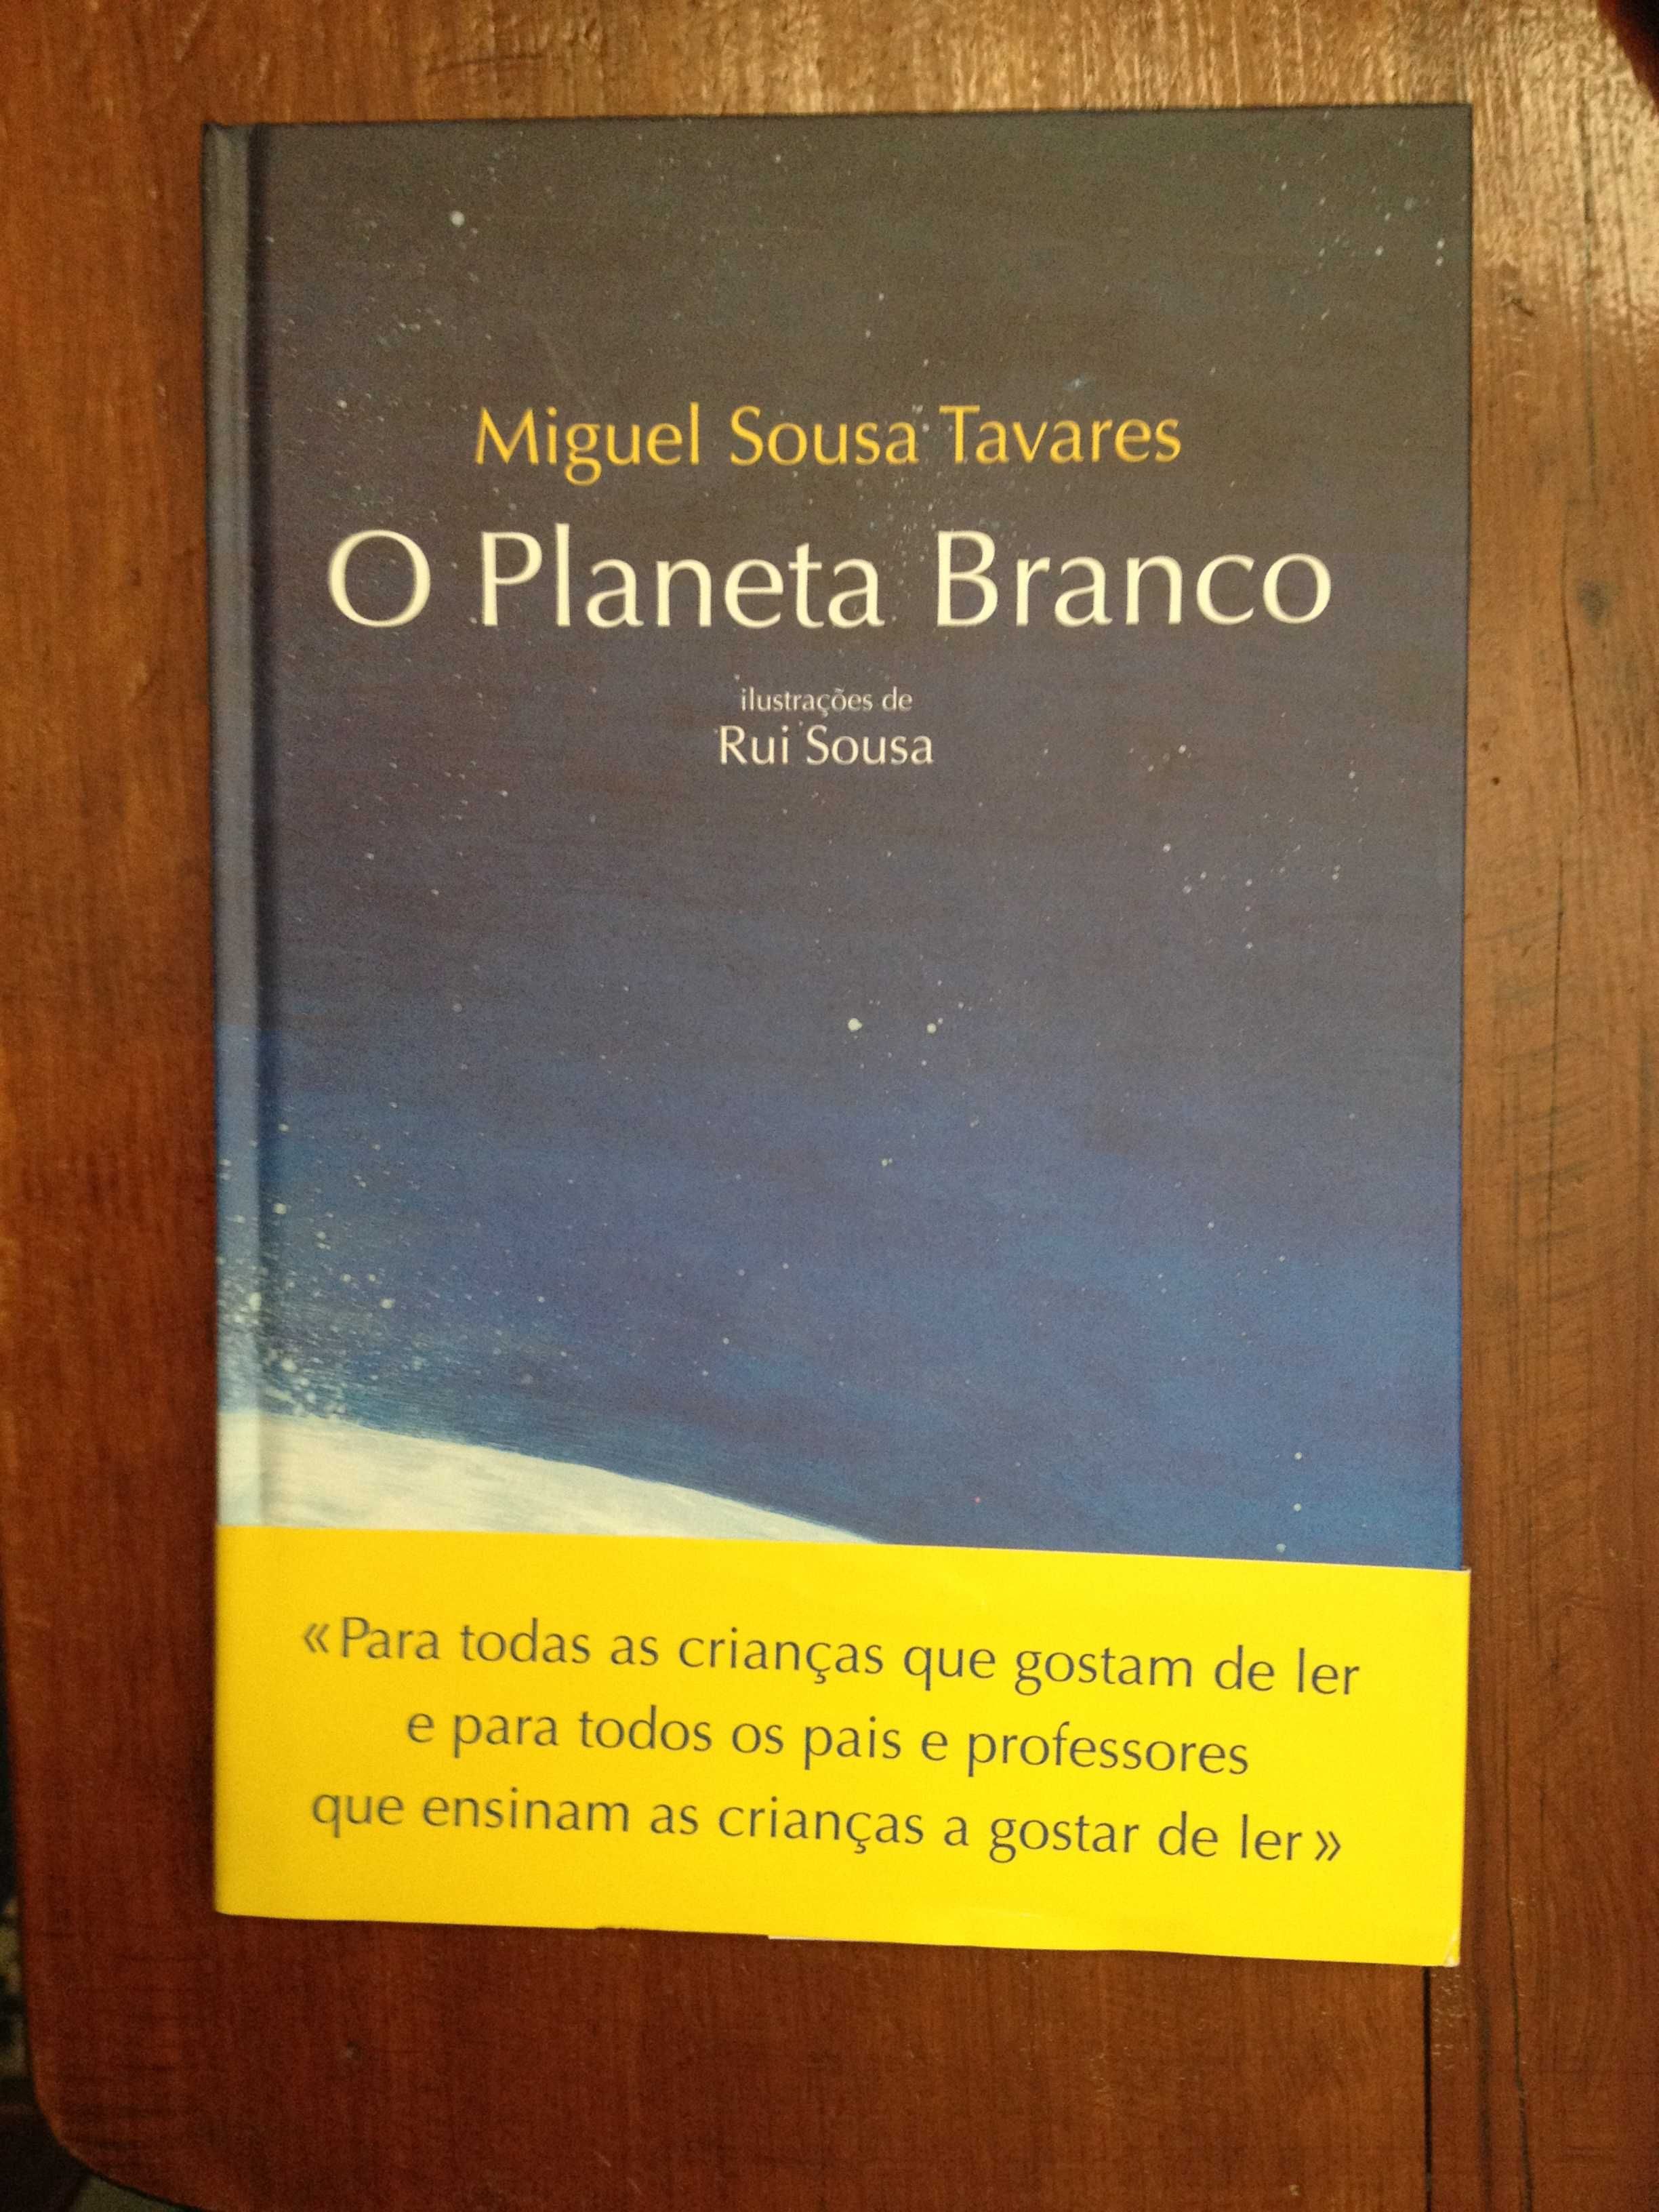 Miguel Sousa Tavares - O planeta branco